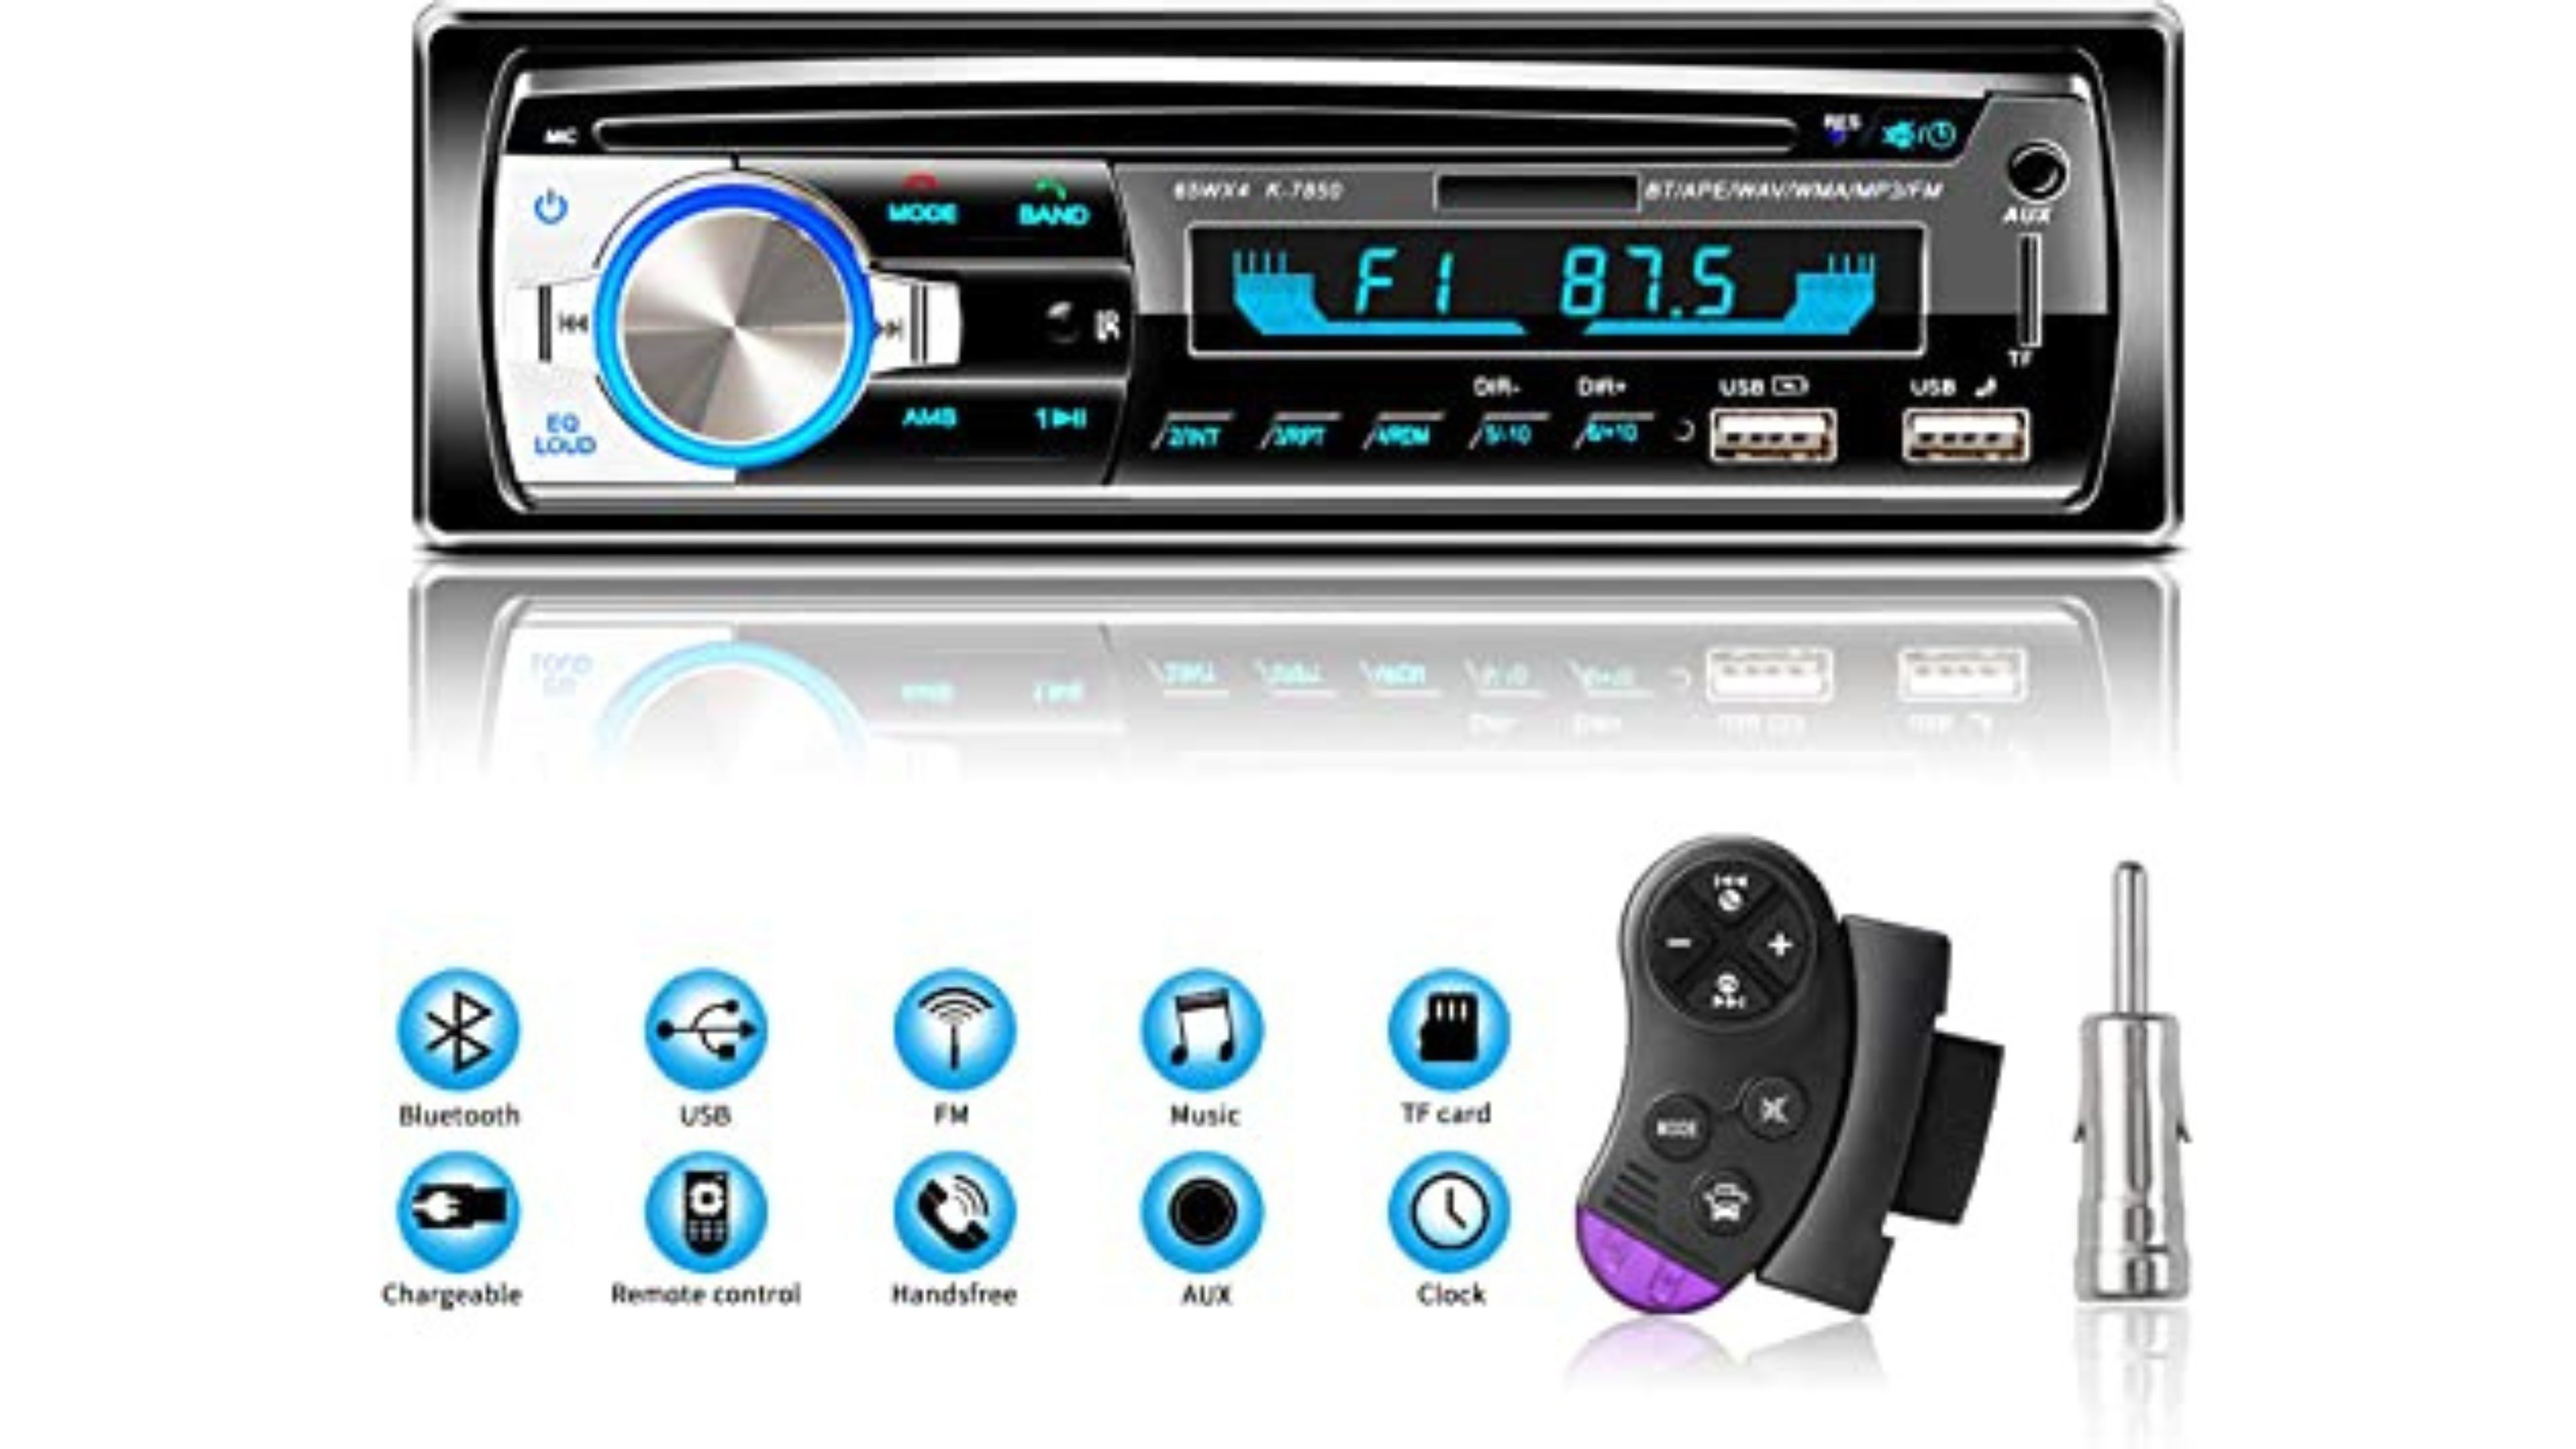 Compra NK Auto Radio Coche con Bluetooth y 1 DIN -RADIOCAR